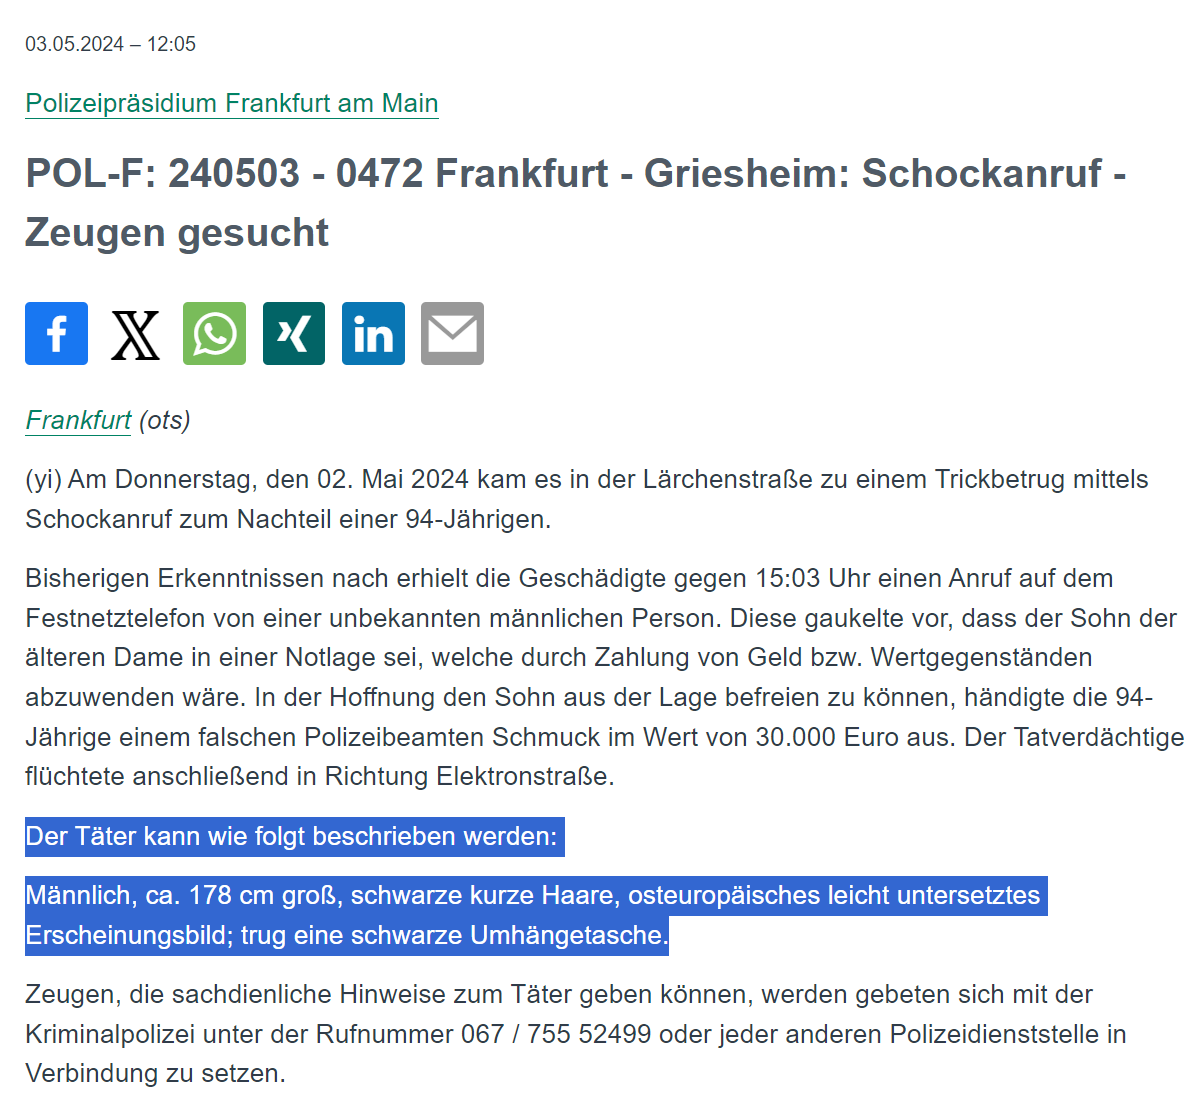 #Frankfurt #Griesheim 

Am Donnerstag kam es in der #Lärchenstraße zu einem Trickbetrug mittels Schockanruf. Die 94-jährige Geschädigte händigte einem falschen Polizeibeamten Schmuck im Wert von 30.000 Euro aus. 

PM: presseportal.de/blaulicht/pm/4…